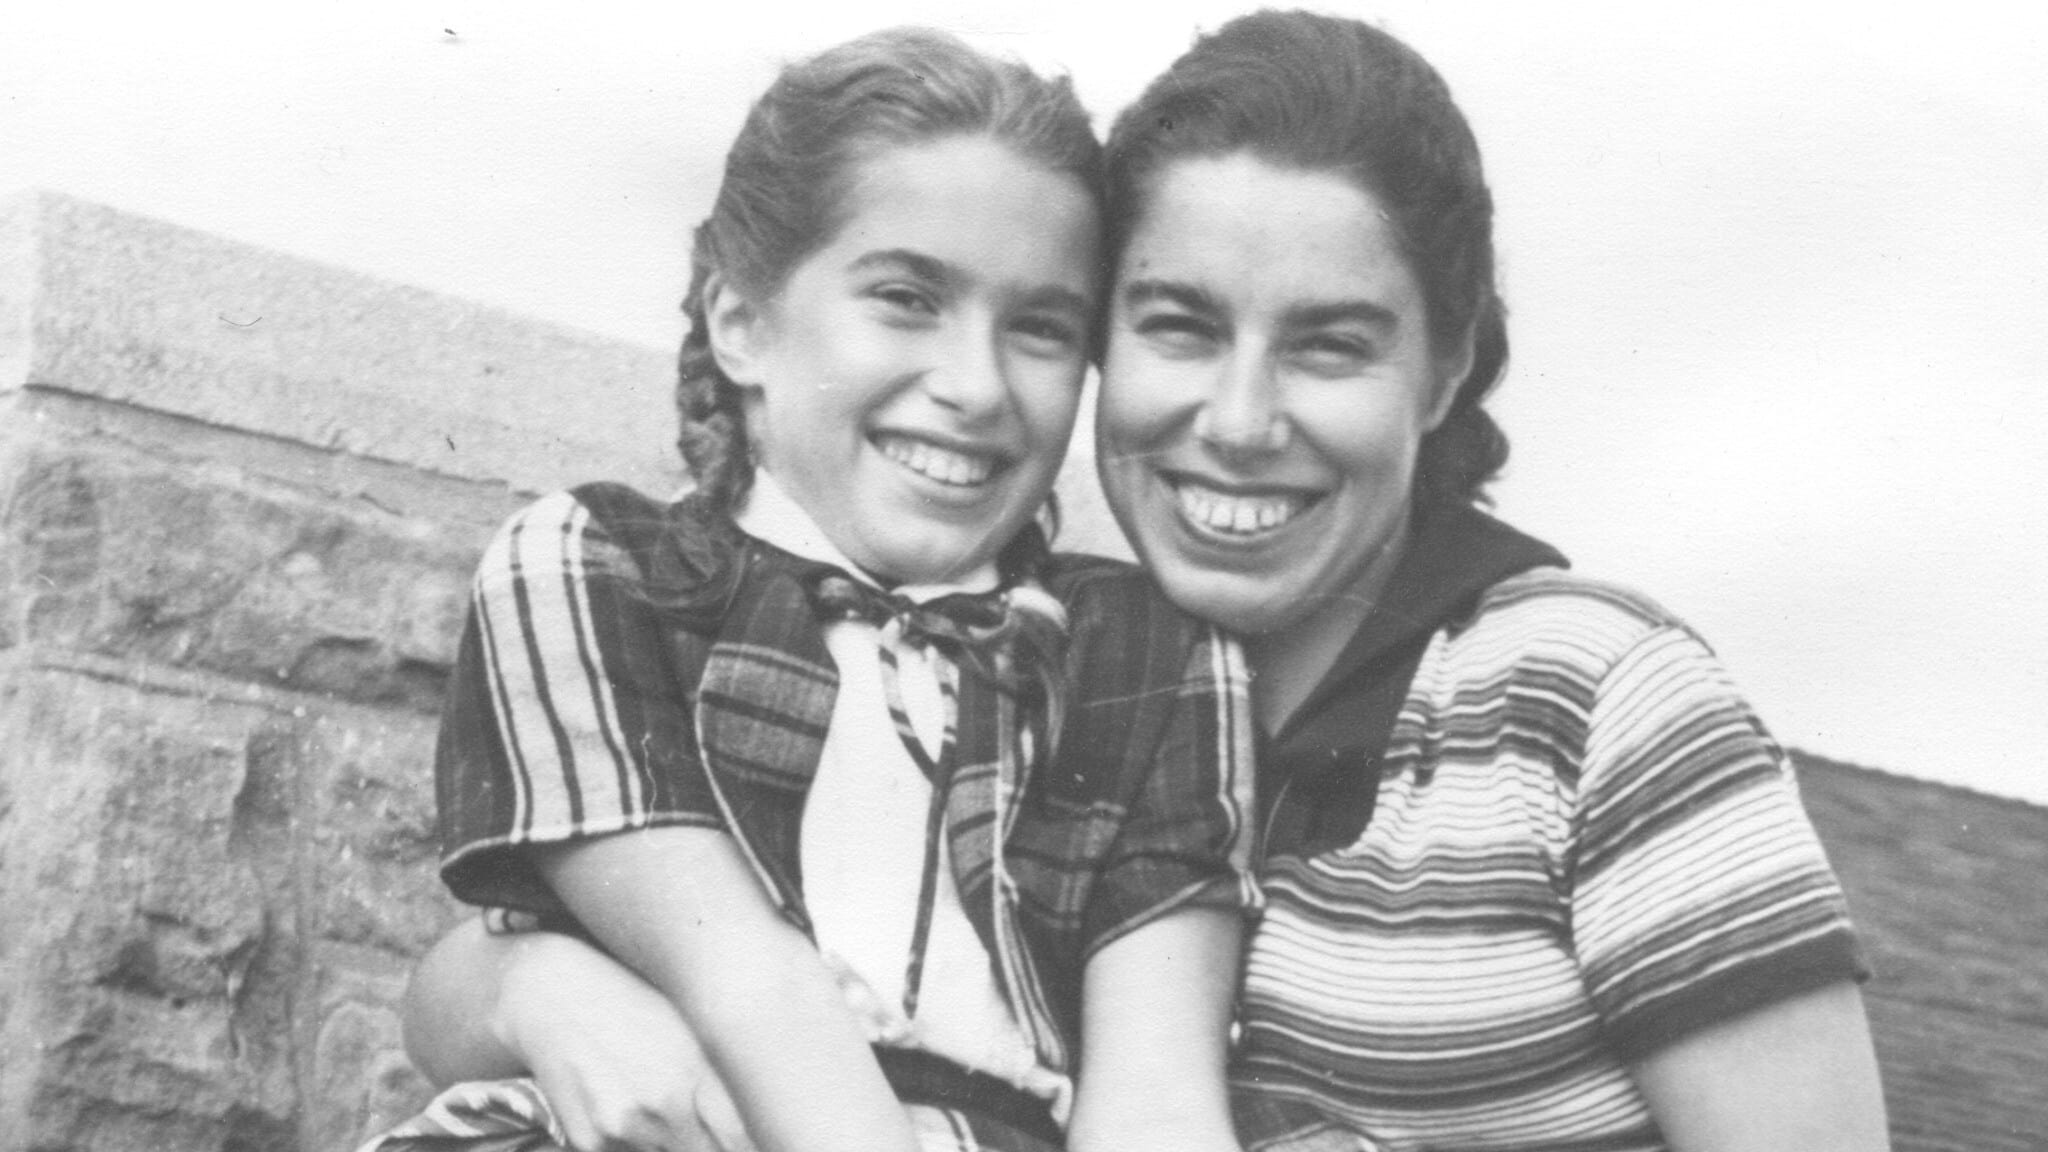 פרנסי רבינק ובתה הלן אפשטיין, ניו יורק, בסביבות שנות ה-50 (צילום: באדיבות הלן אפשטיין)